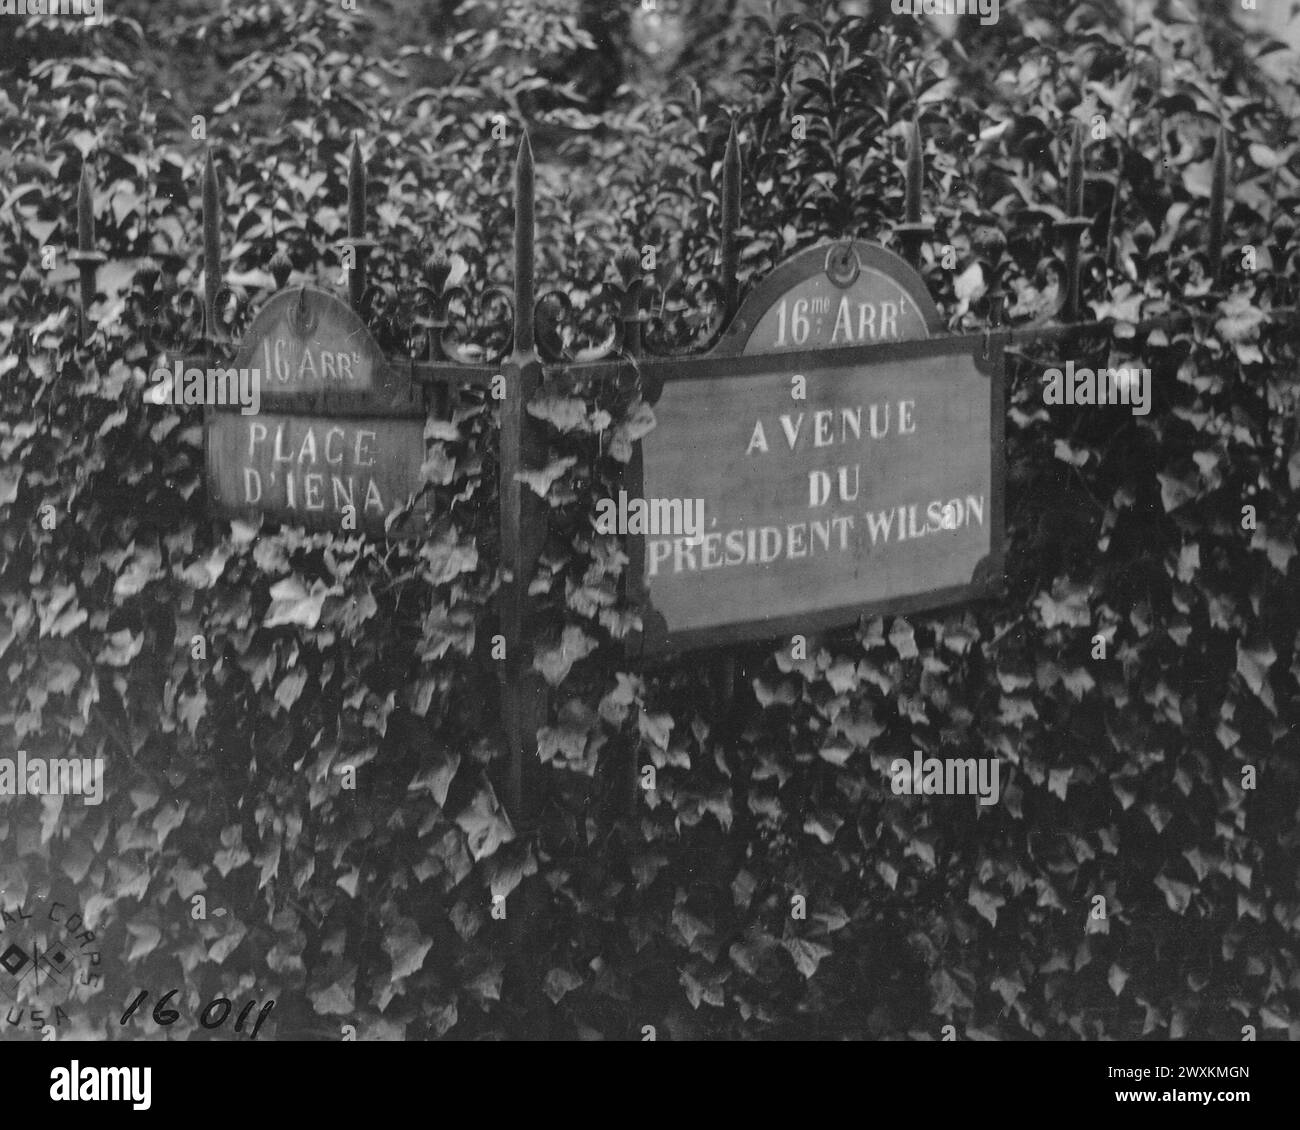 Una vista che mostra i cartelli stradali all'angolo tra Place D'Iena e Ave du President Wilson, quest'ultima strada è quella dedicata al presidente Wilson il giorno dell'indipendenza 1918 a Parigi. Foto Stock